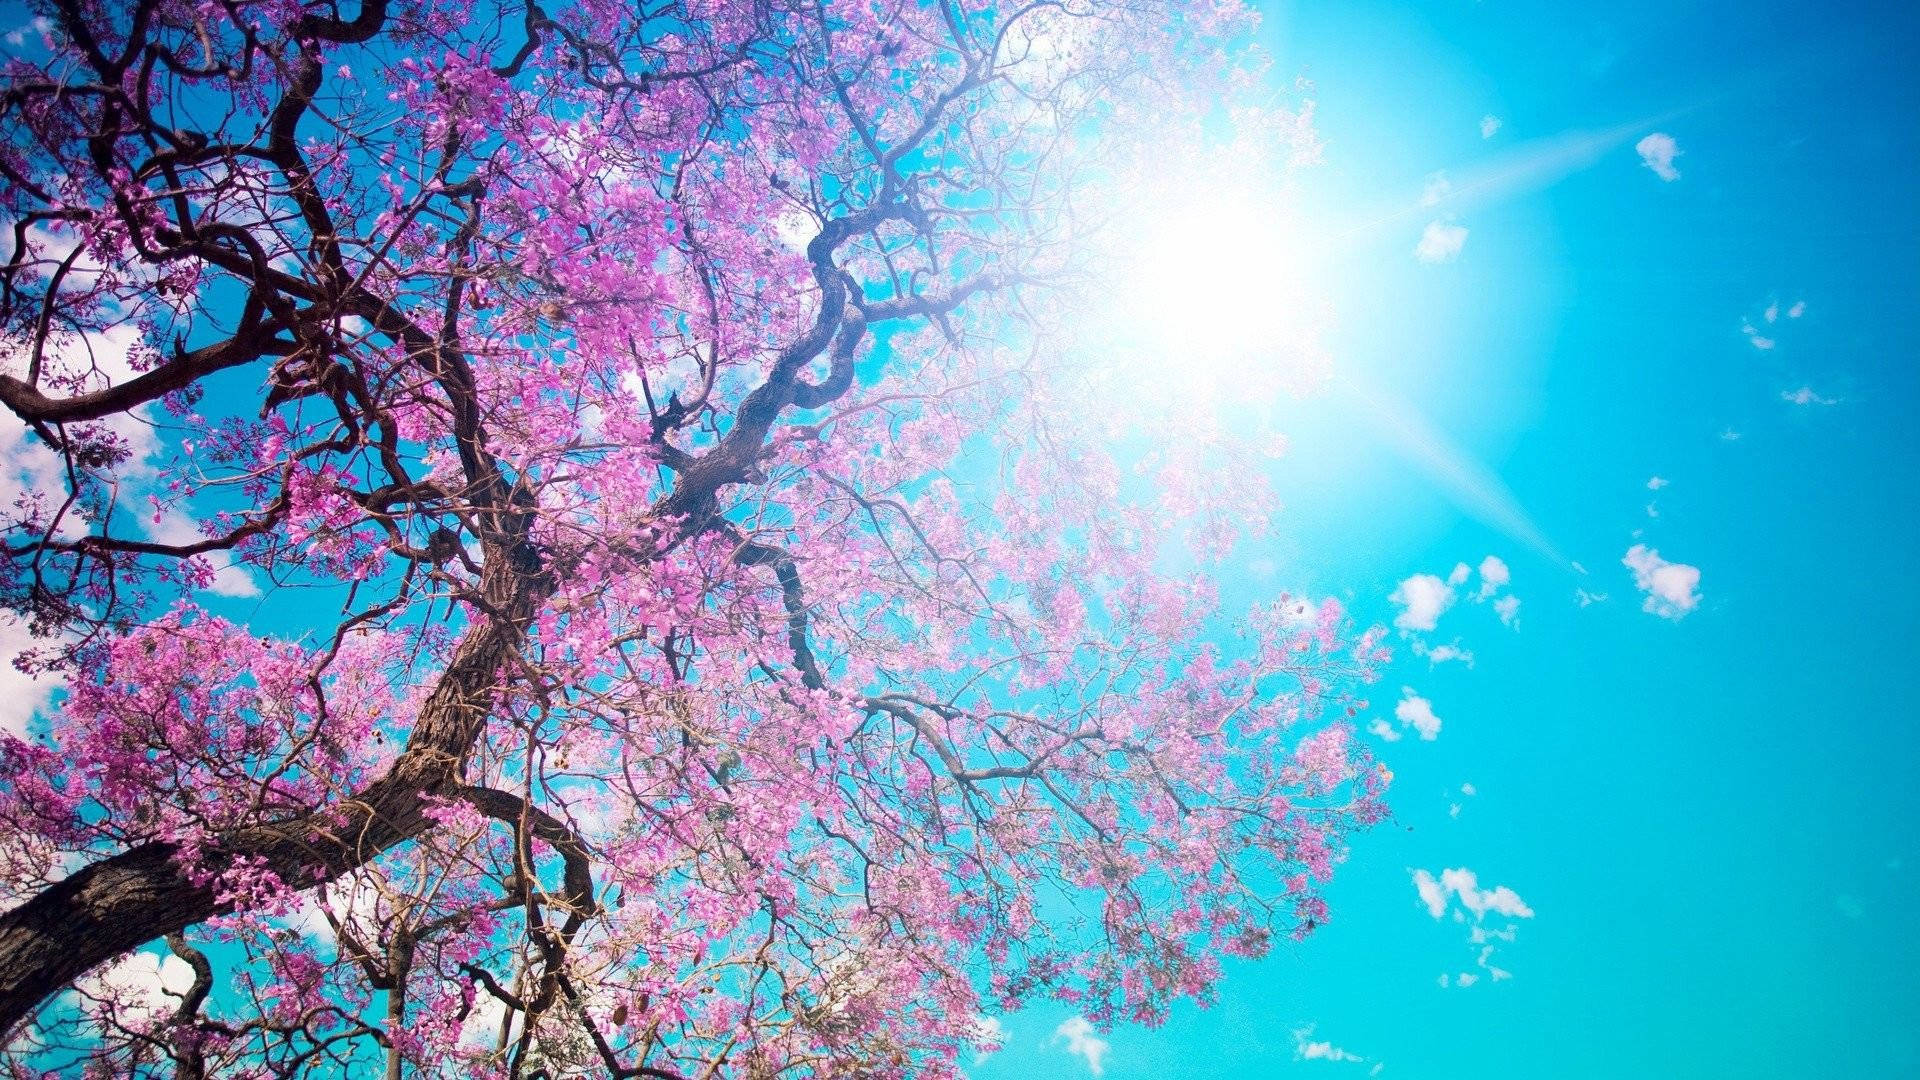 Qhd Cherry Blossom Tree